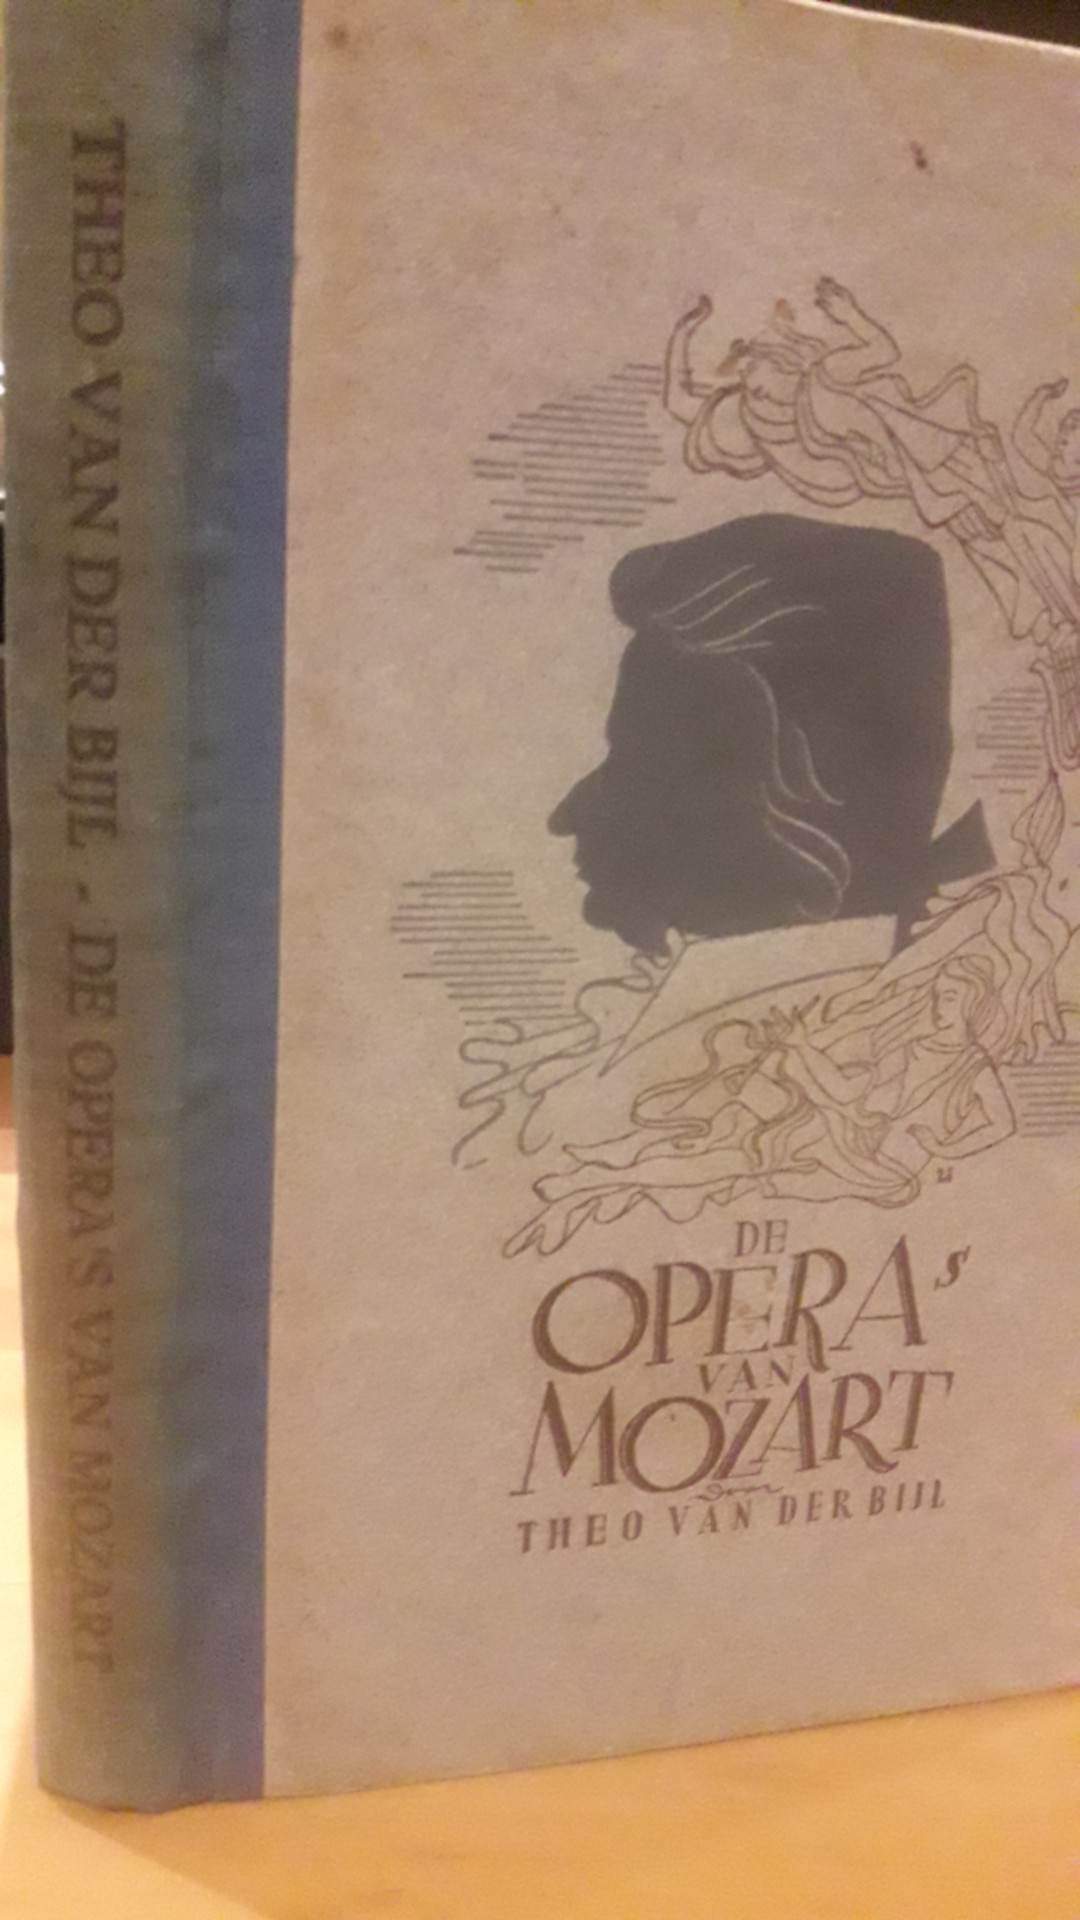 De Opera's van Mozart - 136 blz / OPBOUW 1944 Nederlandse collaboratie uitgeverij